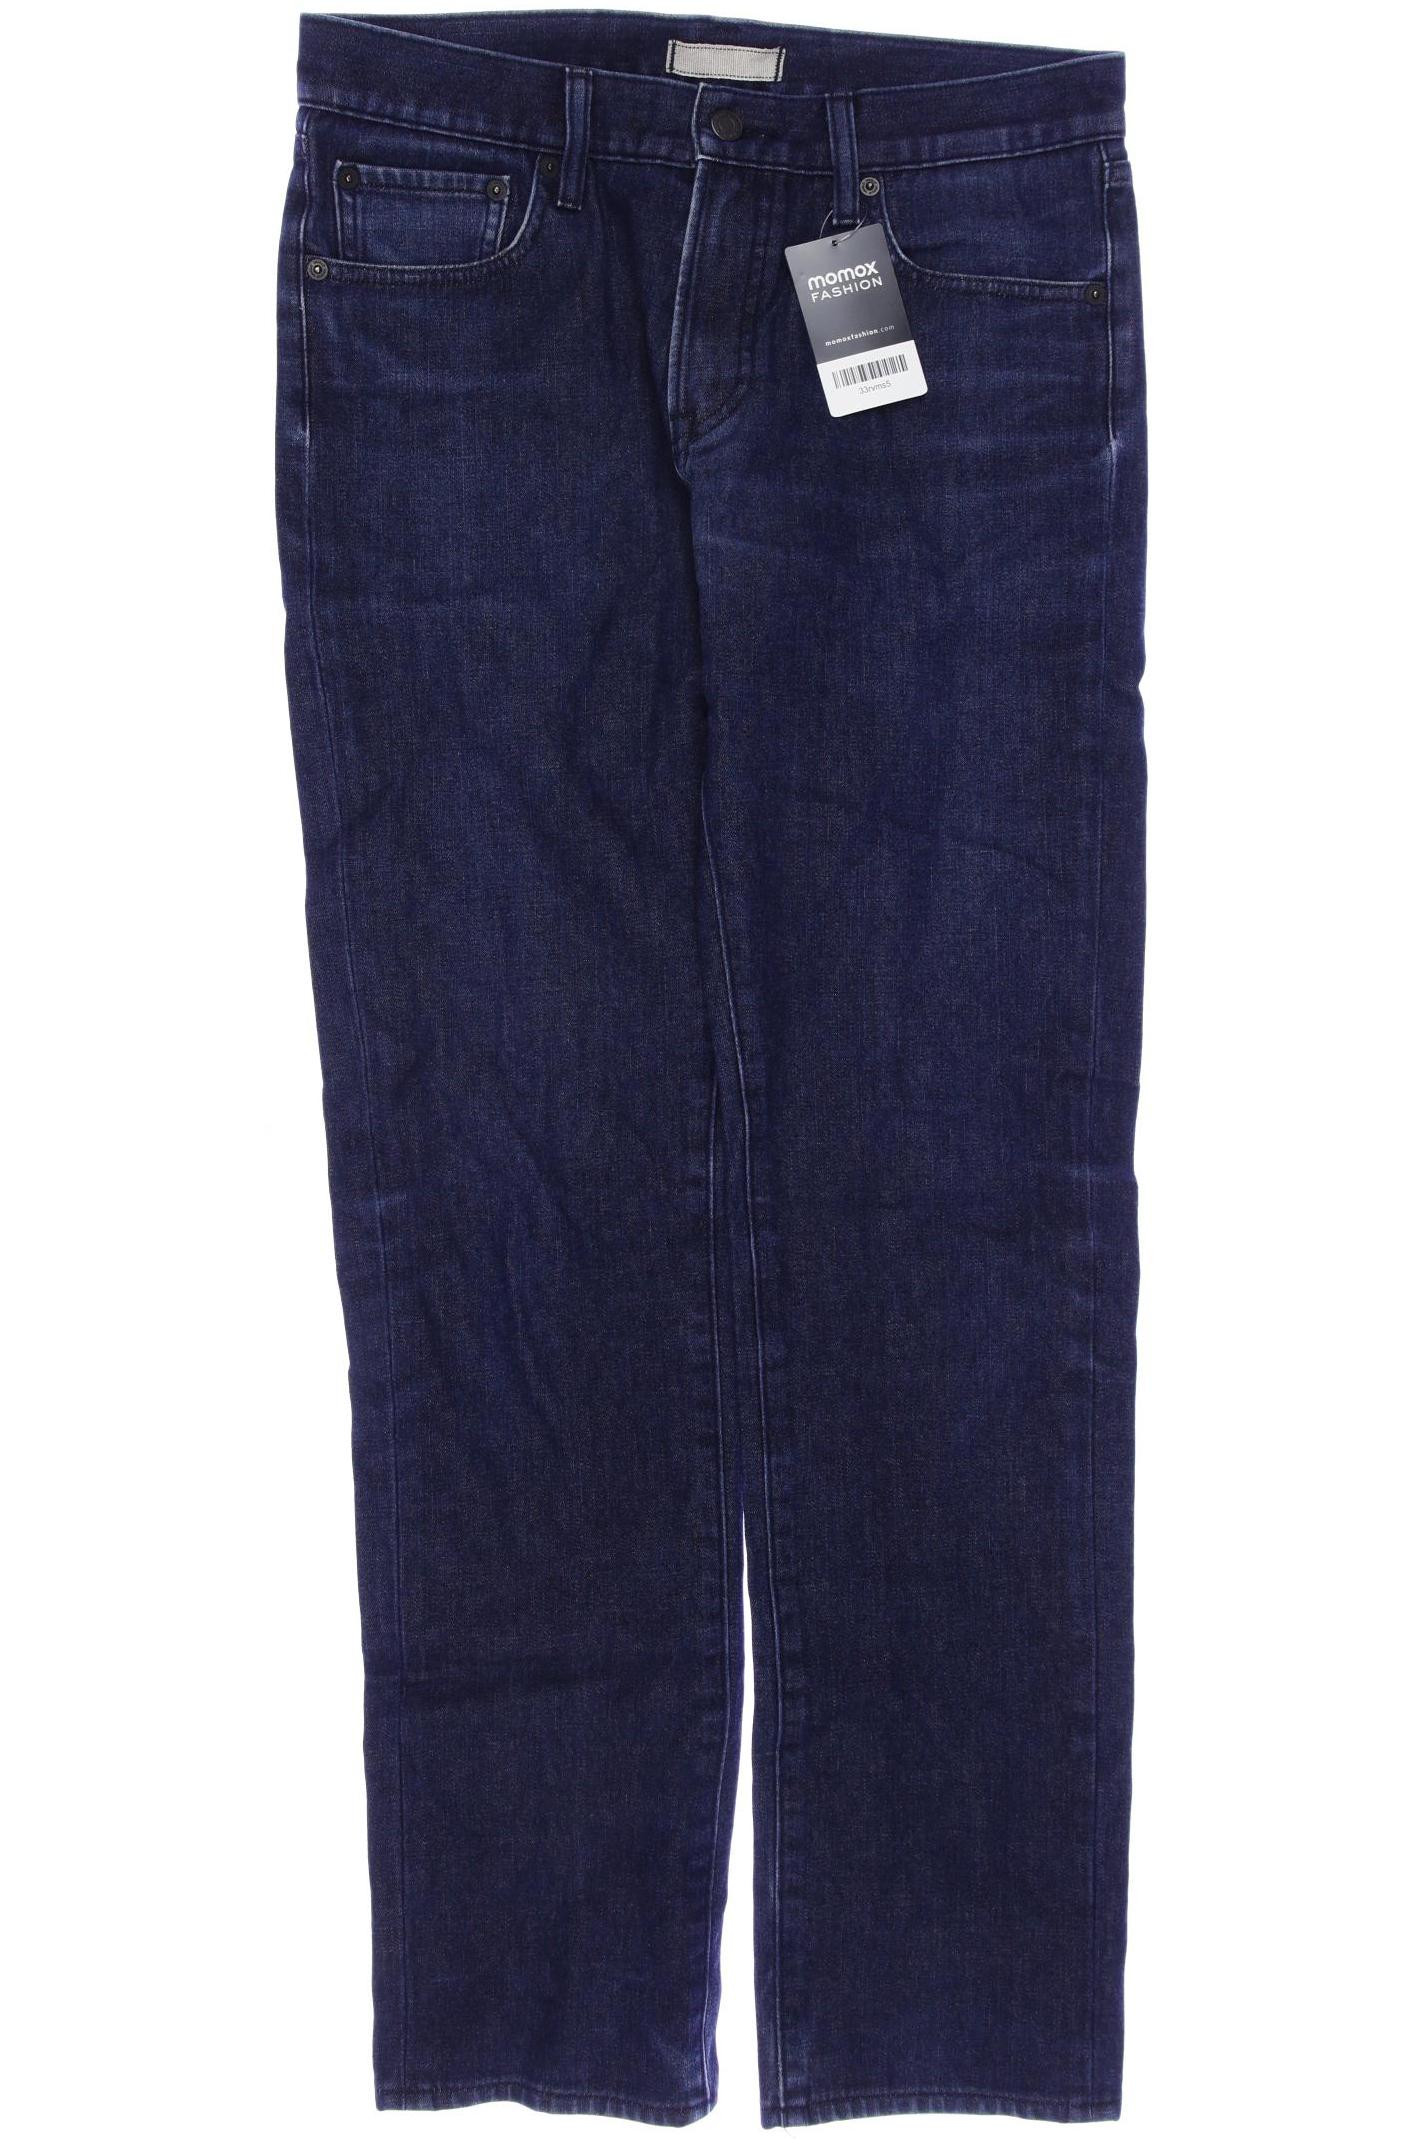 uniqlo Damen Jeans, marineblau, Gr. 42 von uniqlo